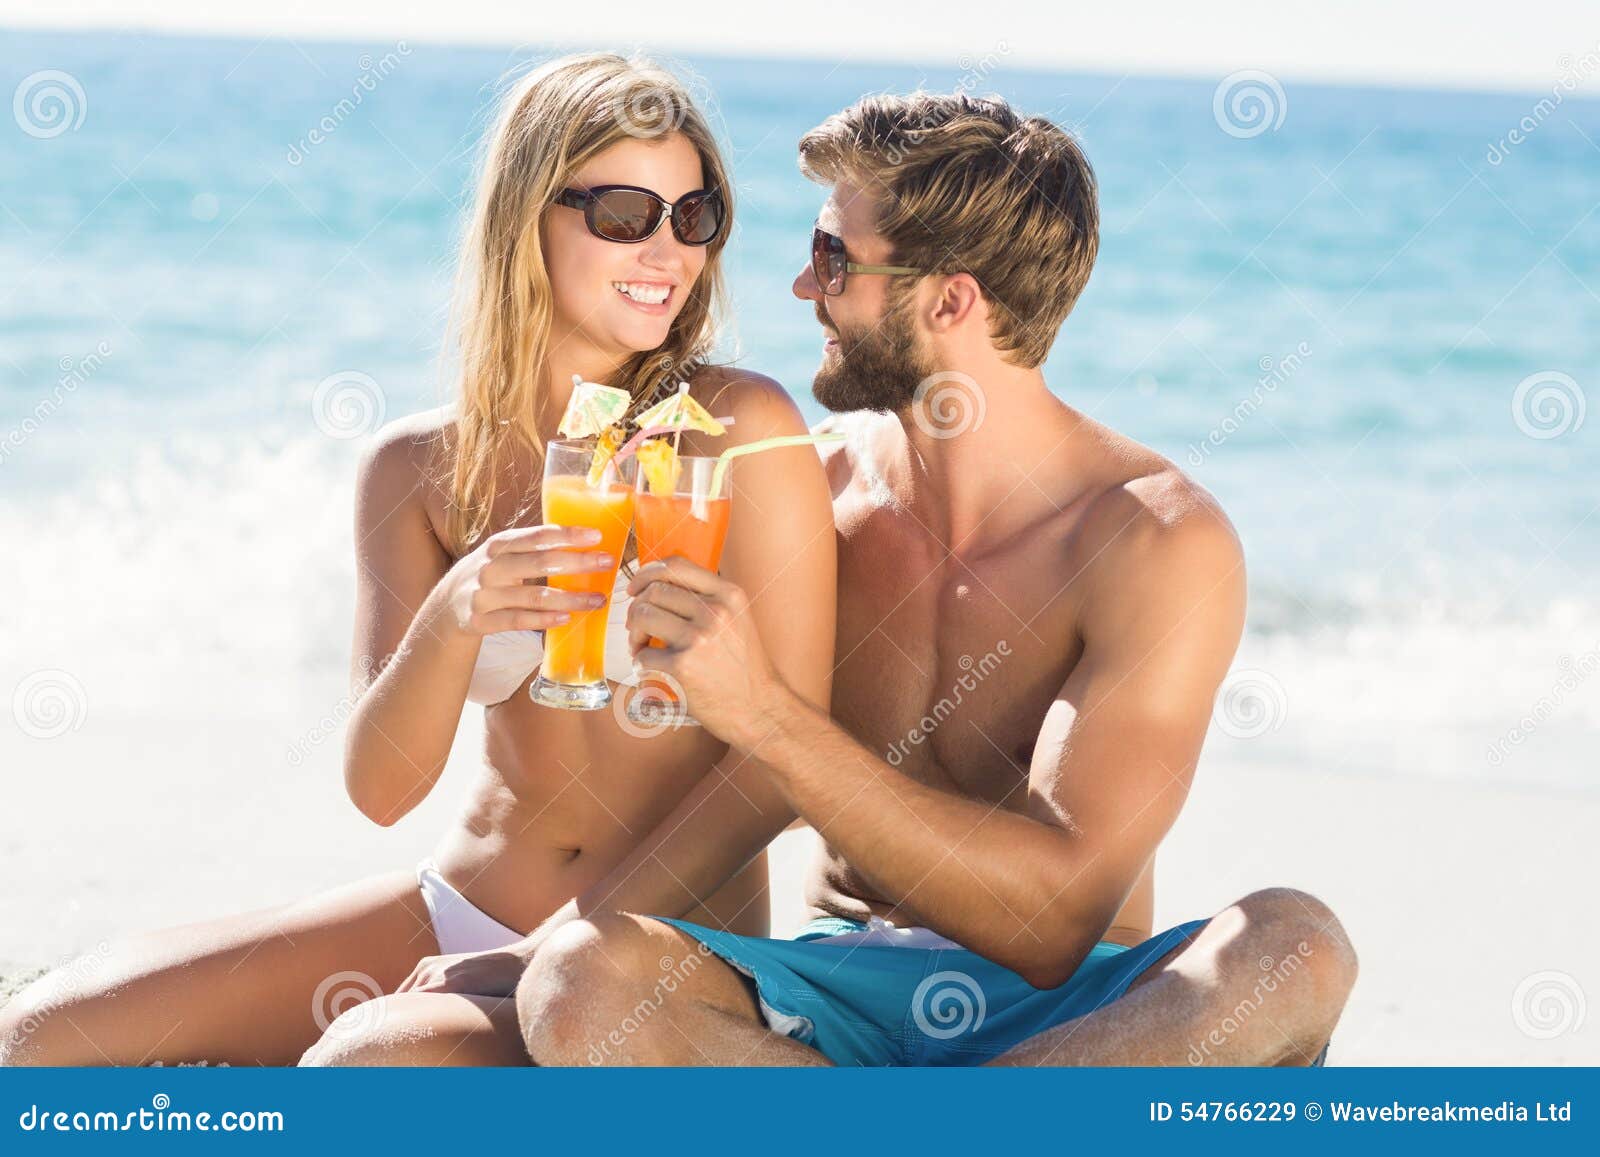 Девушка хочет отдохнуть. Парень с коктейлем. Мужчина на пляже с коктейлем. Мужчина на пляже с кокте. Девушка коктейль парень.